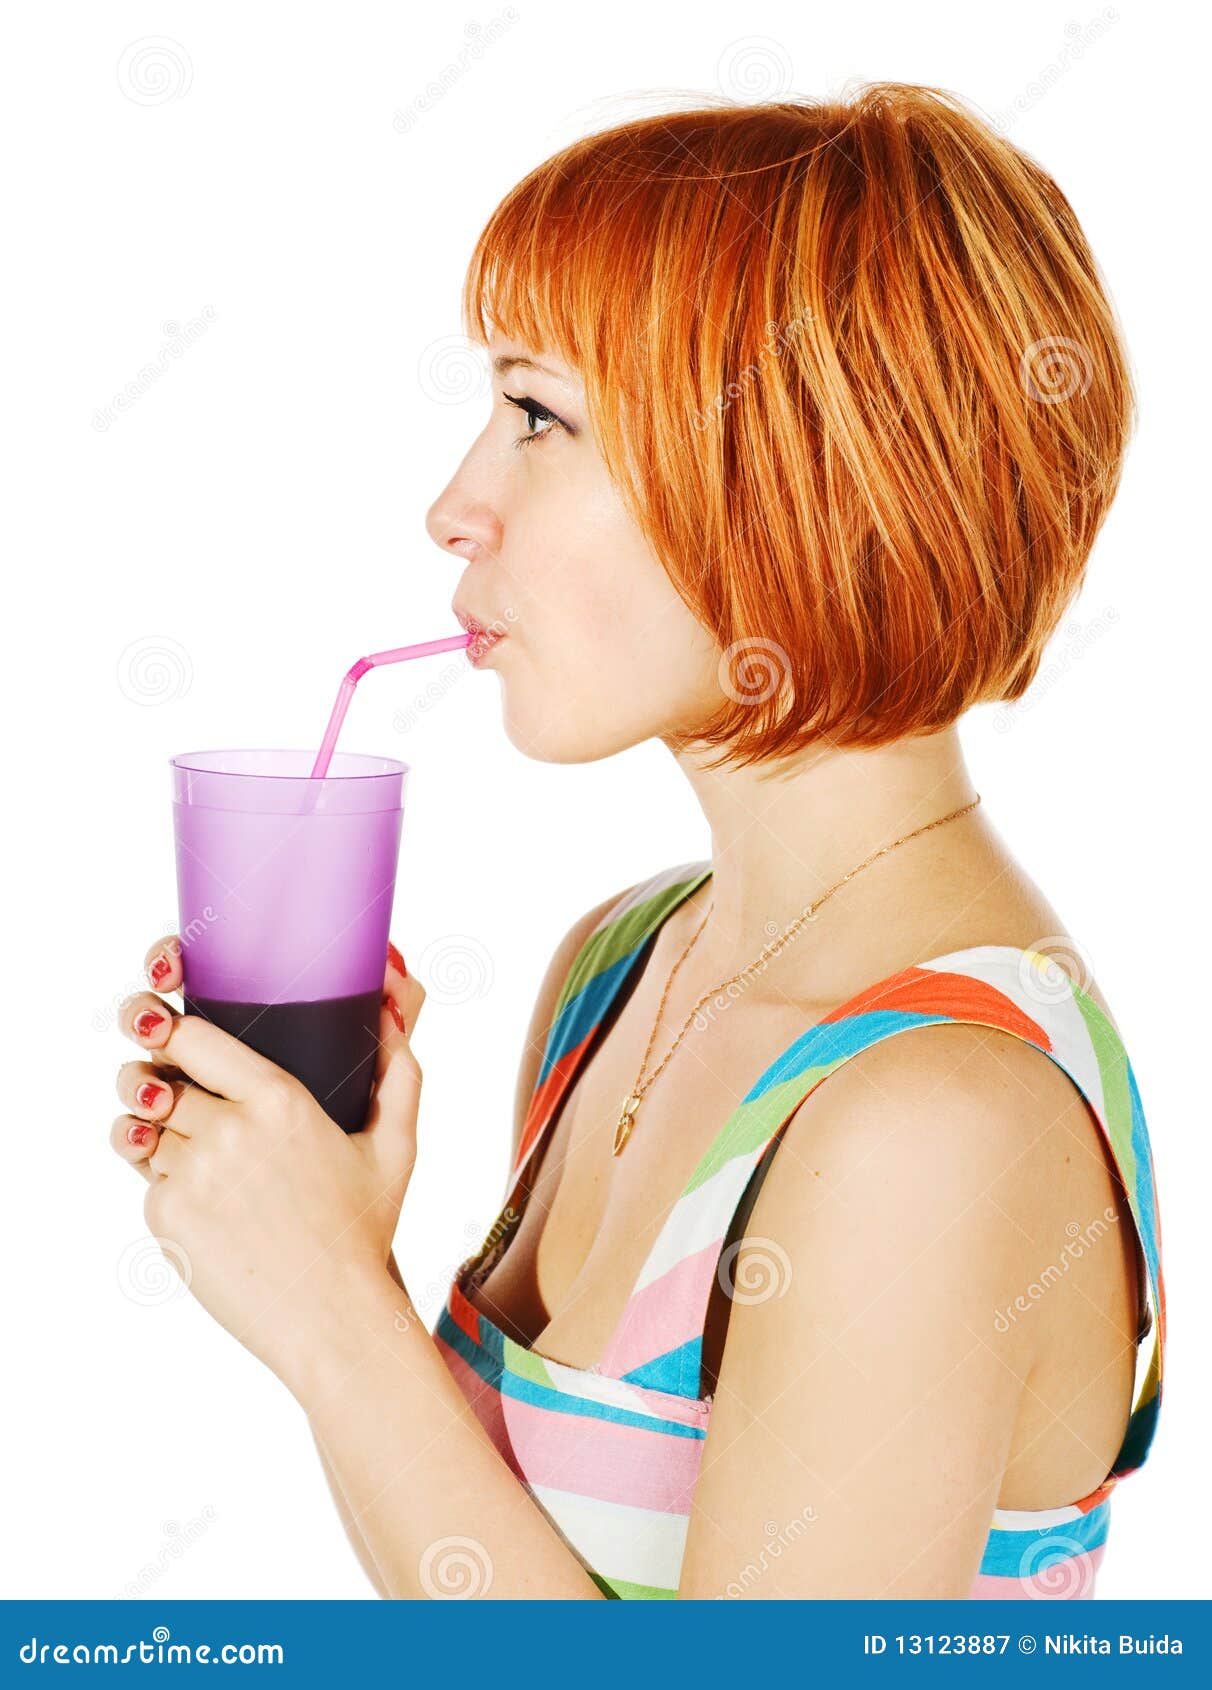 Пить сок через трубочку. Девушка пьет из трубочки. Девушка пьет сок. Человек пьет коктейль. Пьет сок из трубочки.